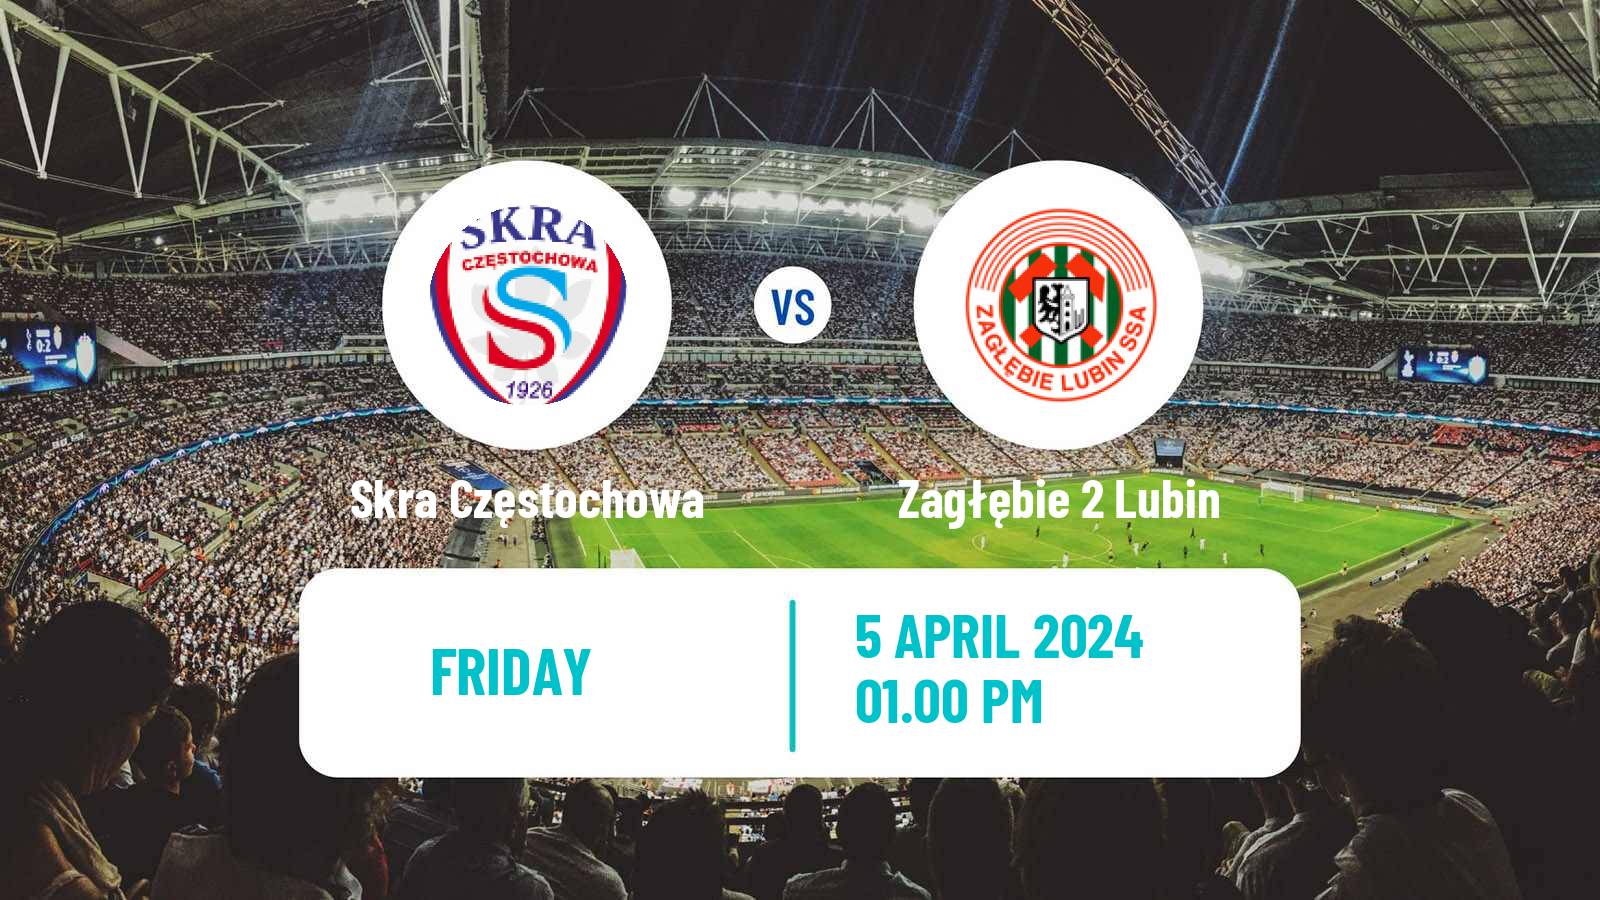 Soccer Polish Division 2 Skra Częstochowa - Zagłębie 2 Lubin